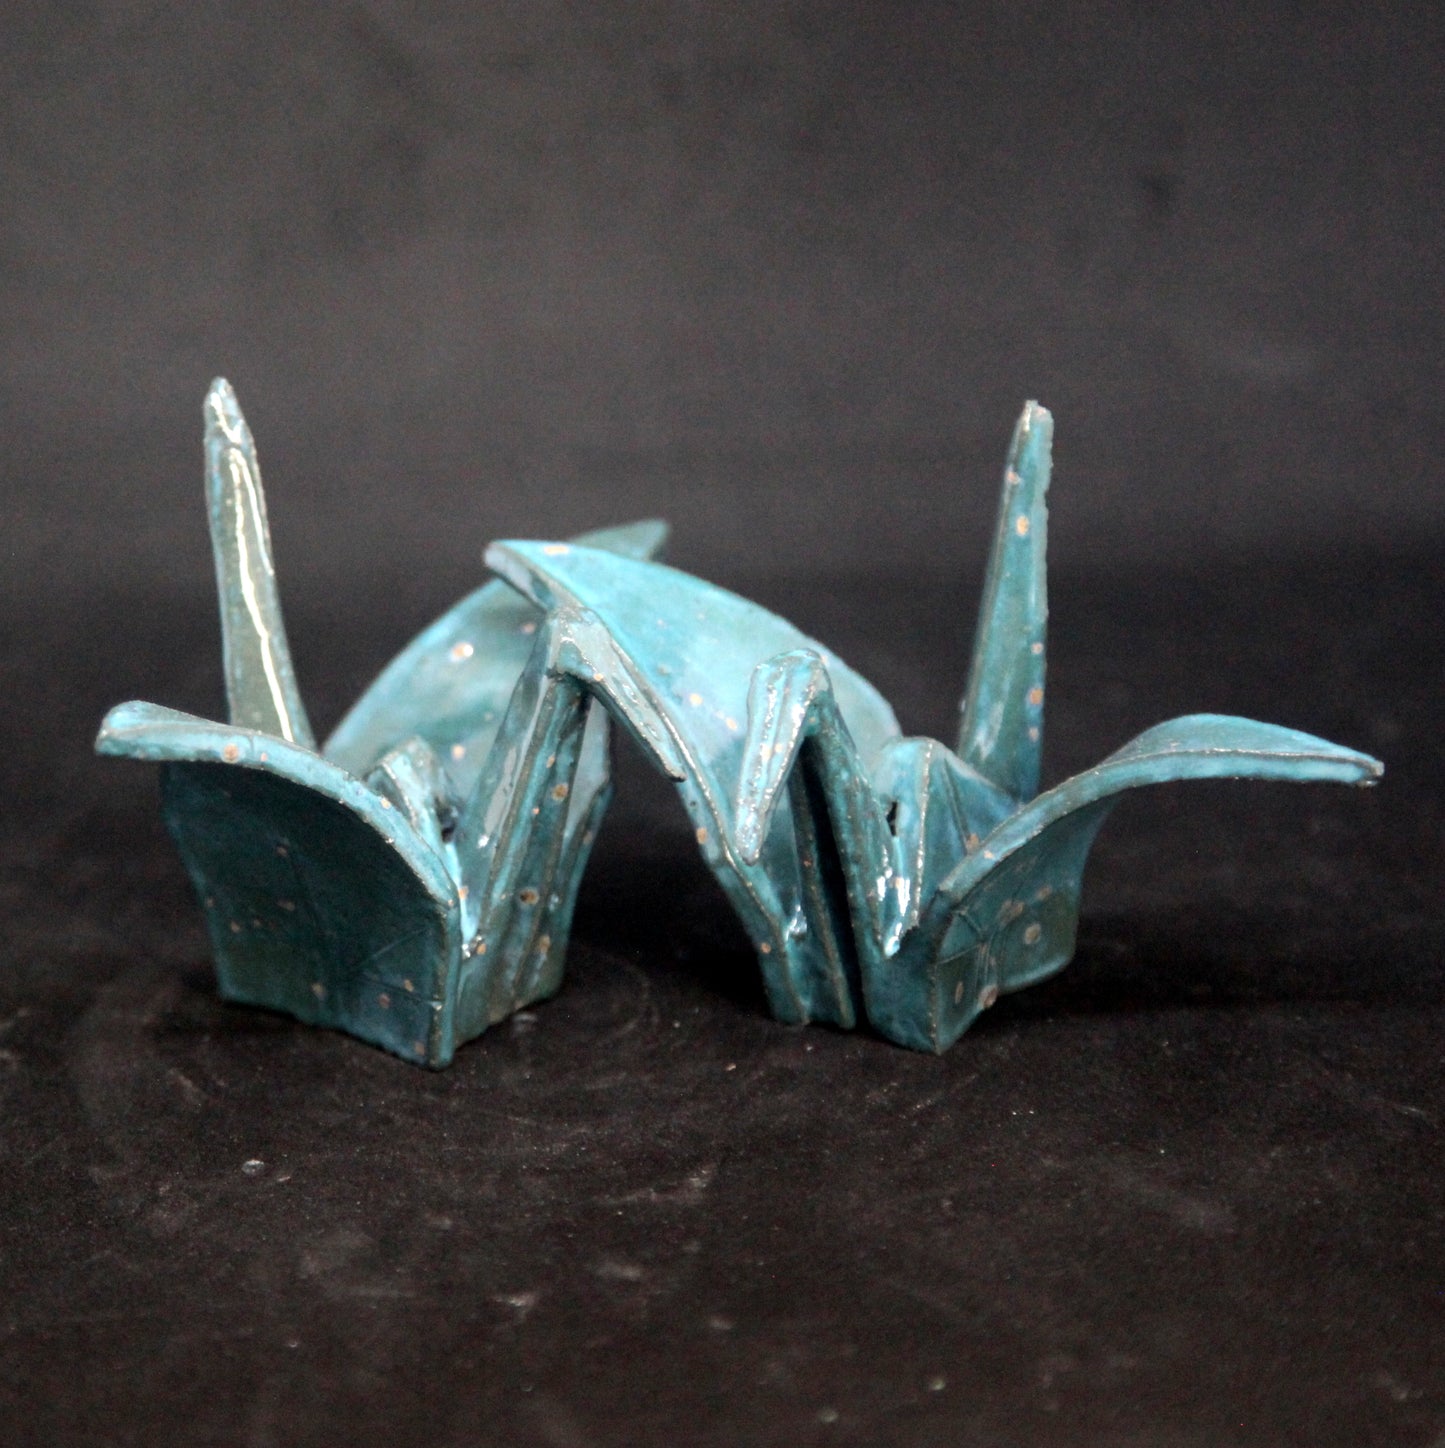 Crystallizing tuquoise birds - origami pattern